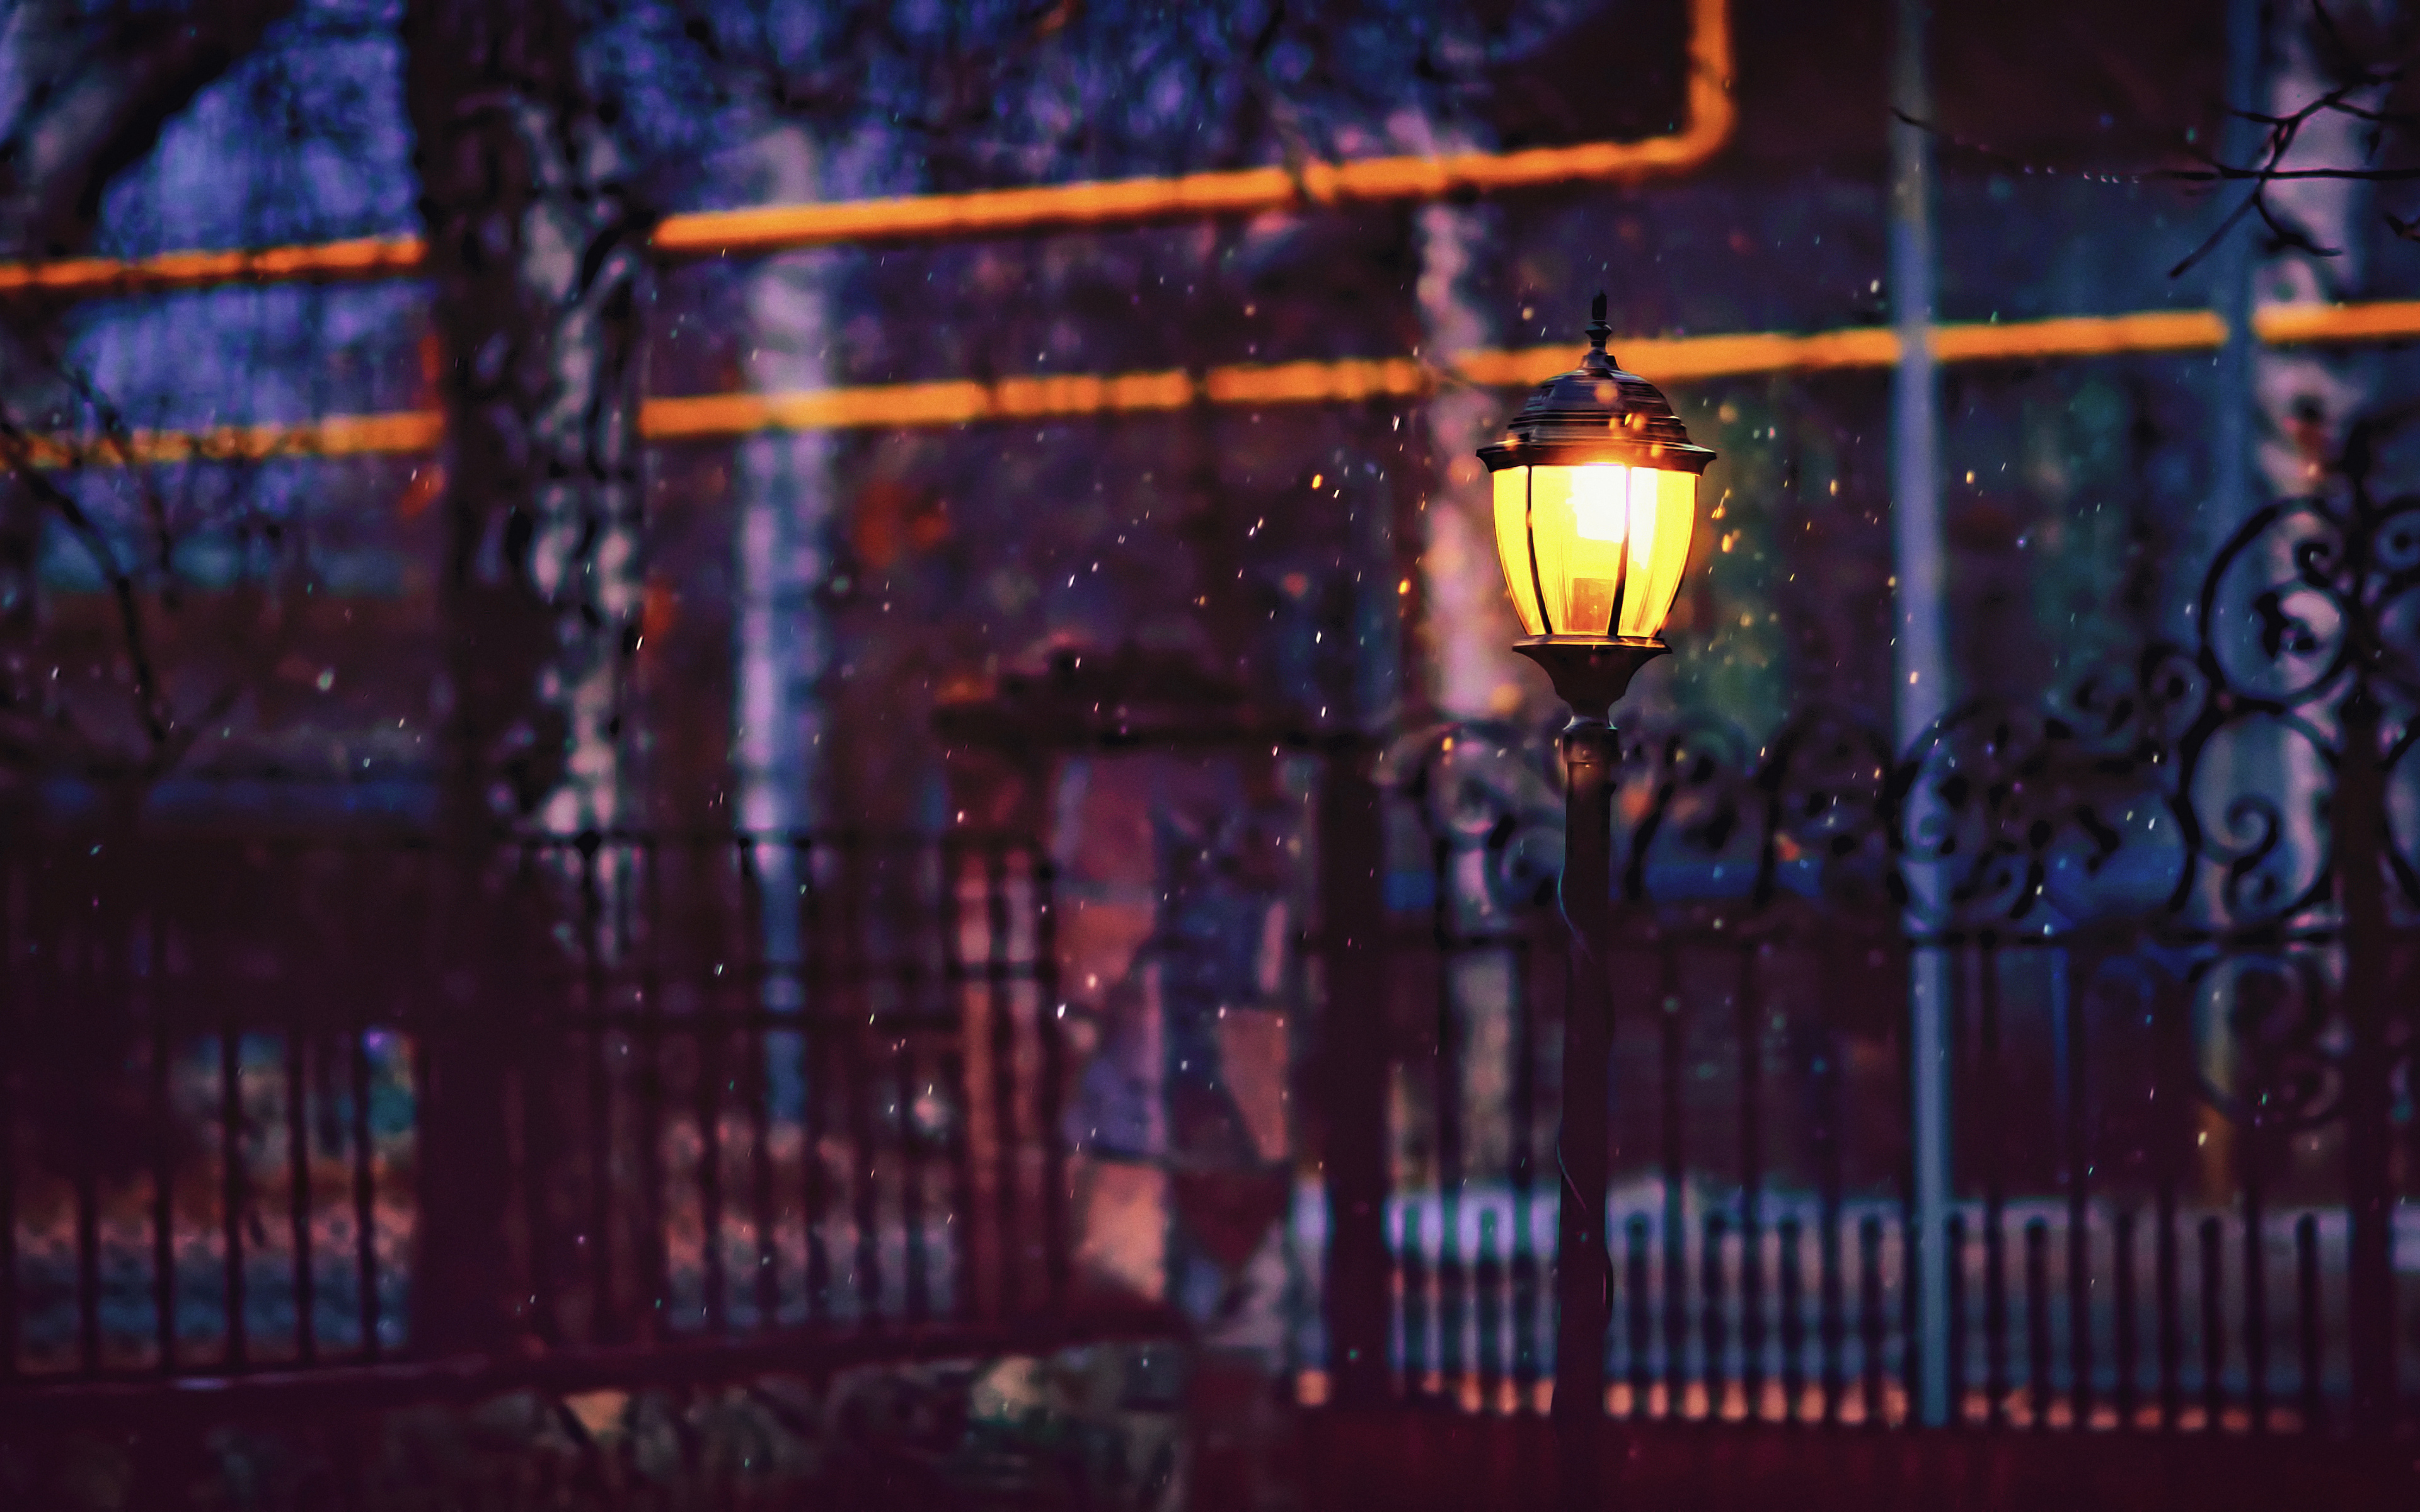 Перед лужайкой приветливо освещенный мягким светом фонаря. Фонарь на улице. Ночные фонари. Фонарь ночью. Зимний уличный фонарь.